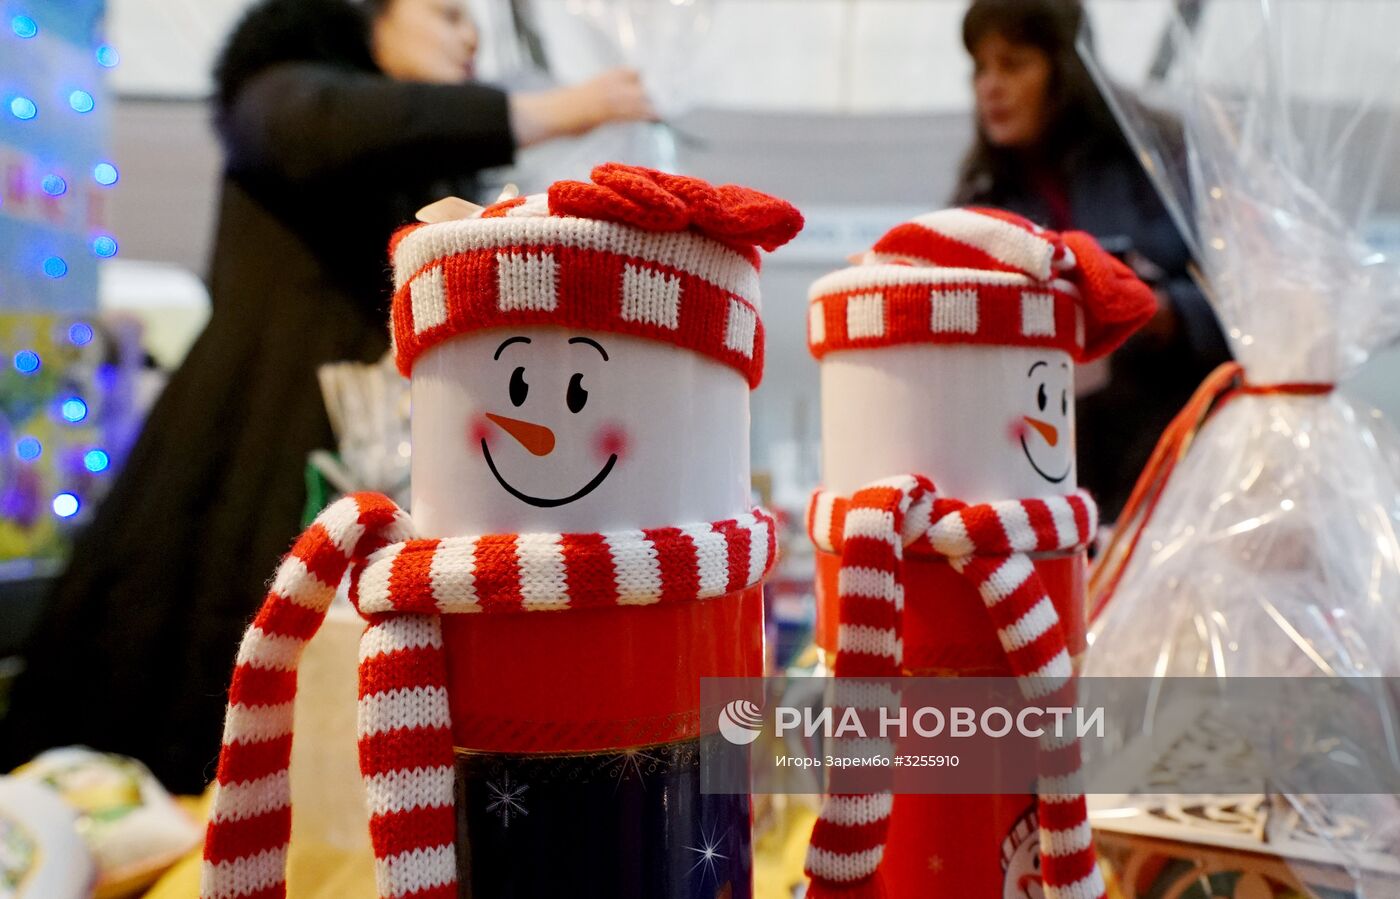 Рождественская ярмарка в Калининграде